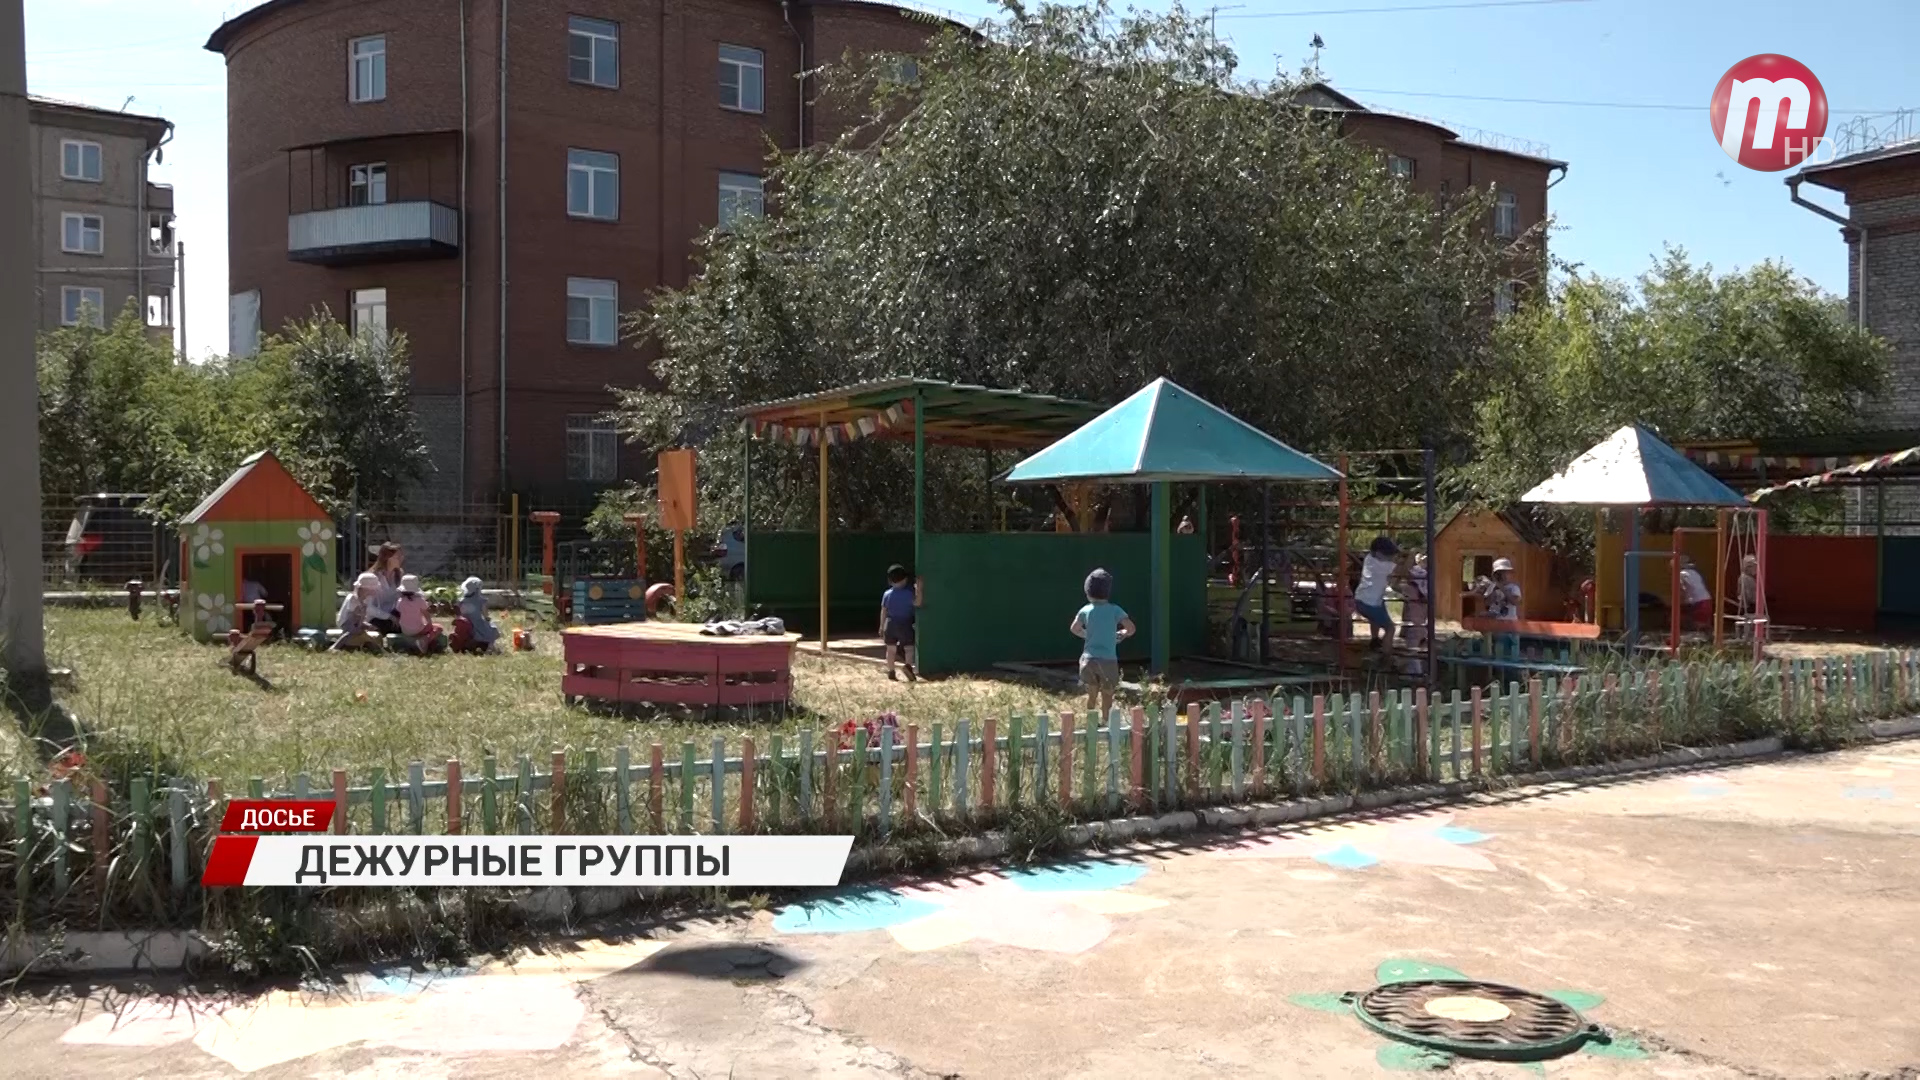 В Улан-Удэ дежурные группы откроют еще в 8-ми детских садах